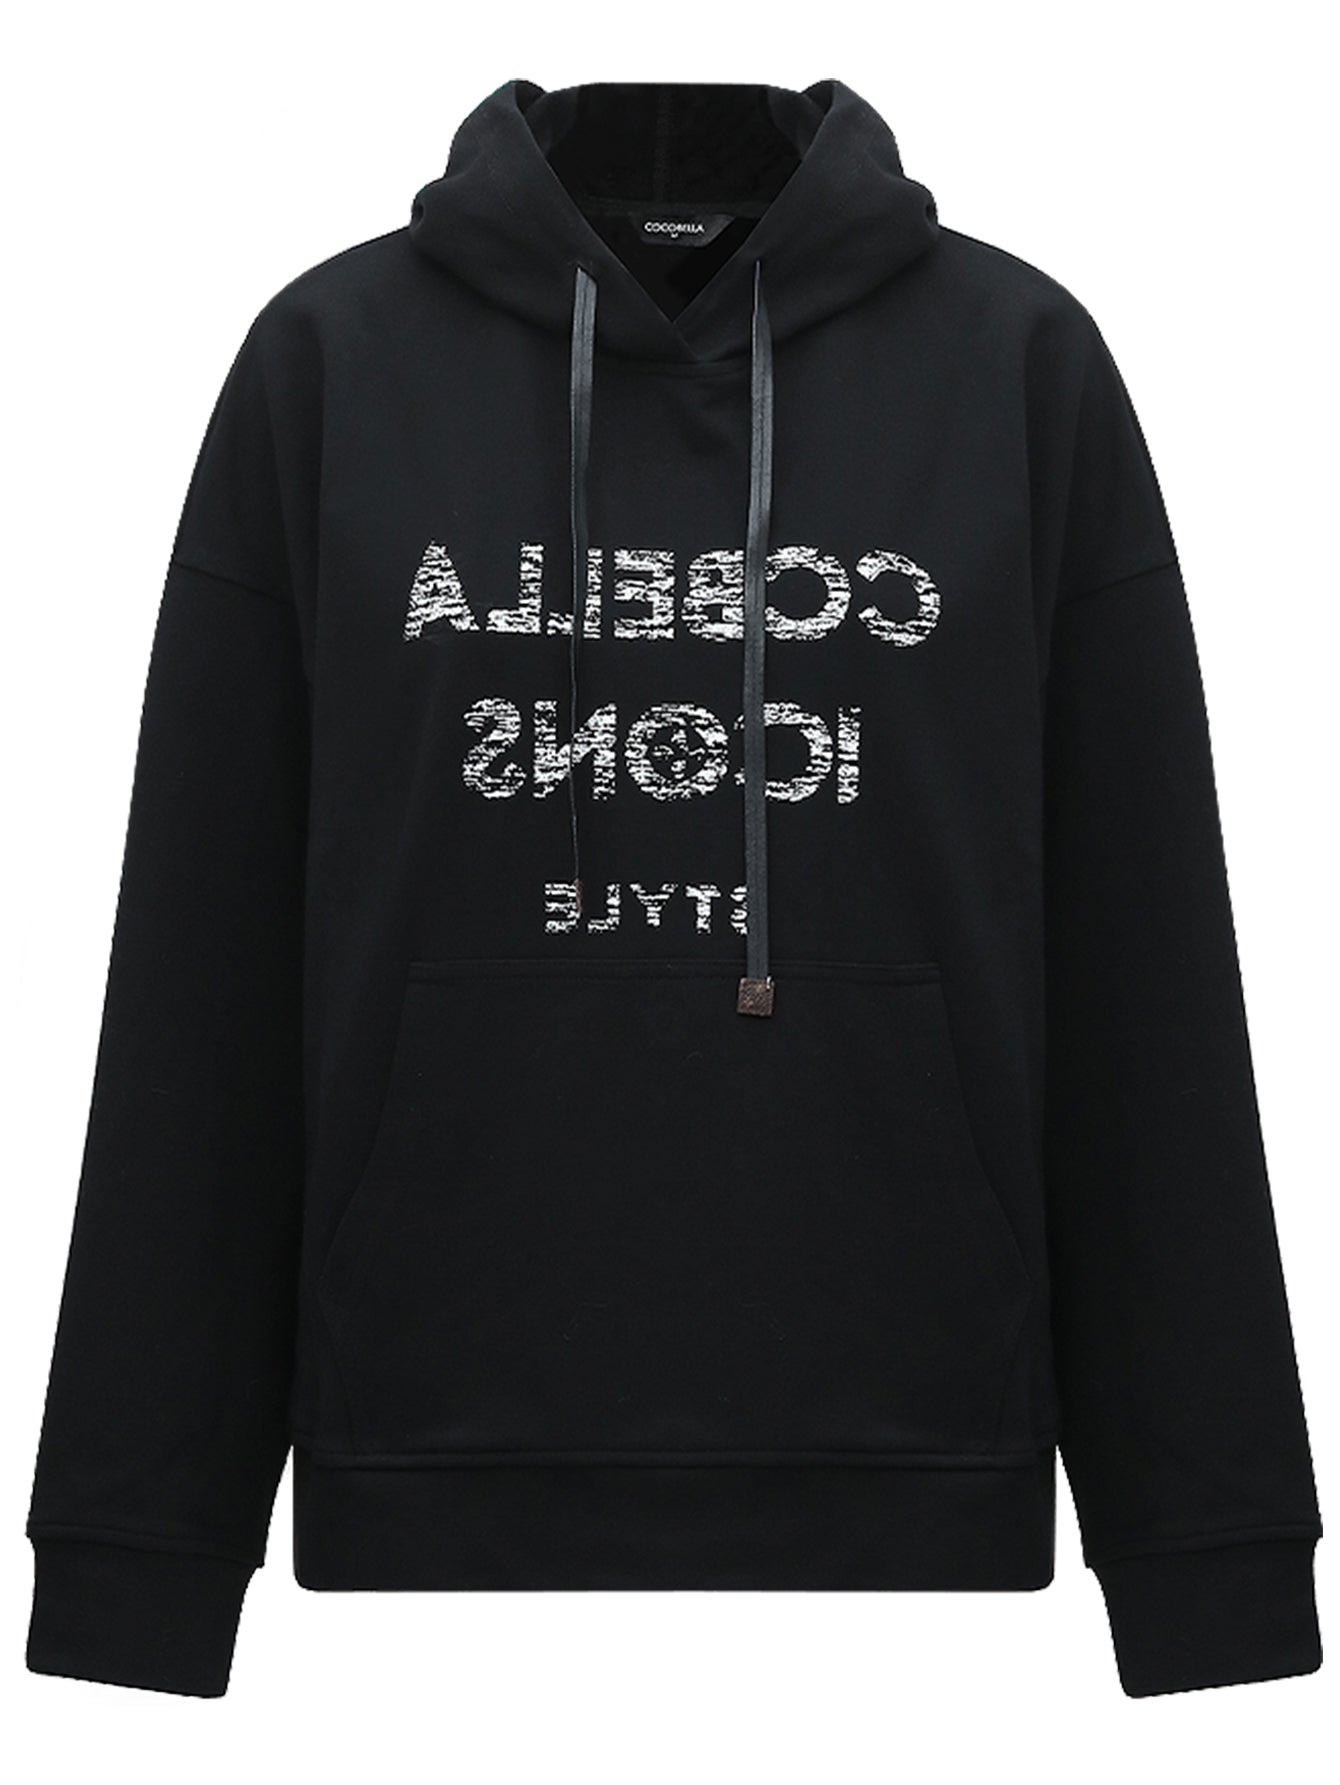 black-graphic-print-pullover-hoodie_all_black_4.jpg